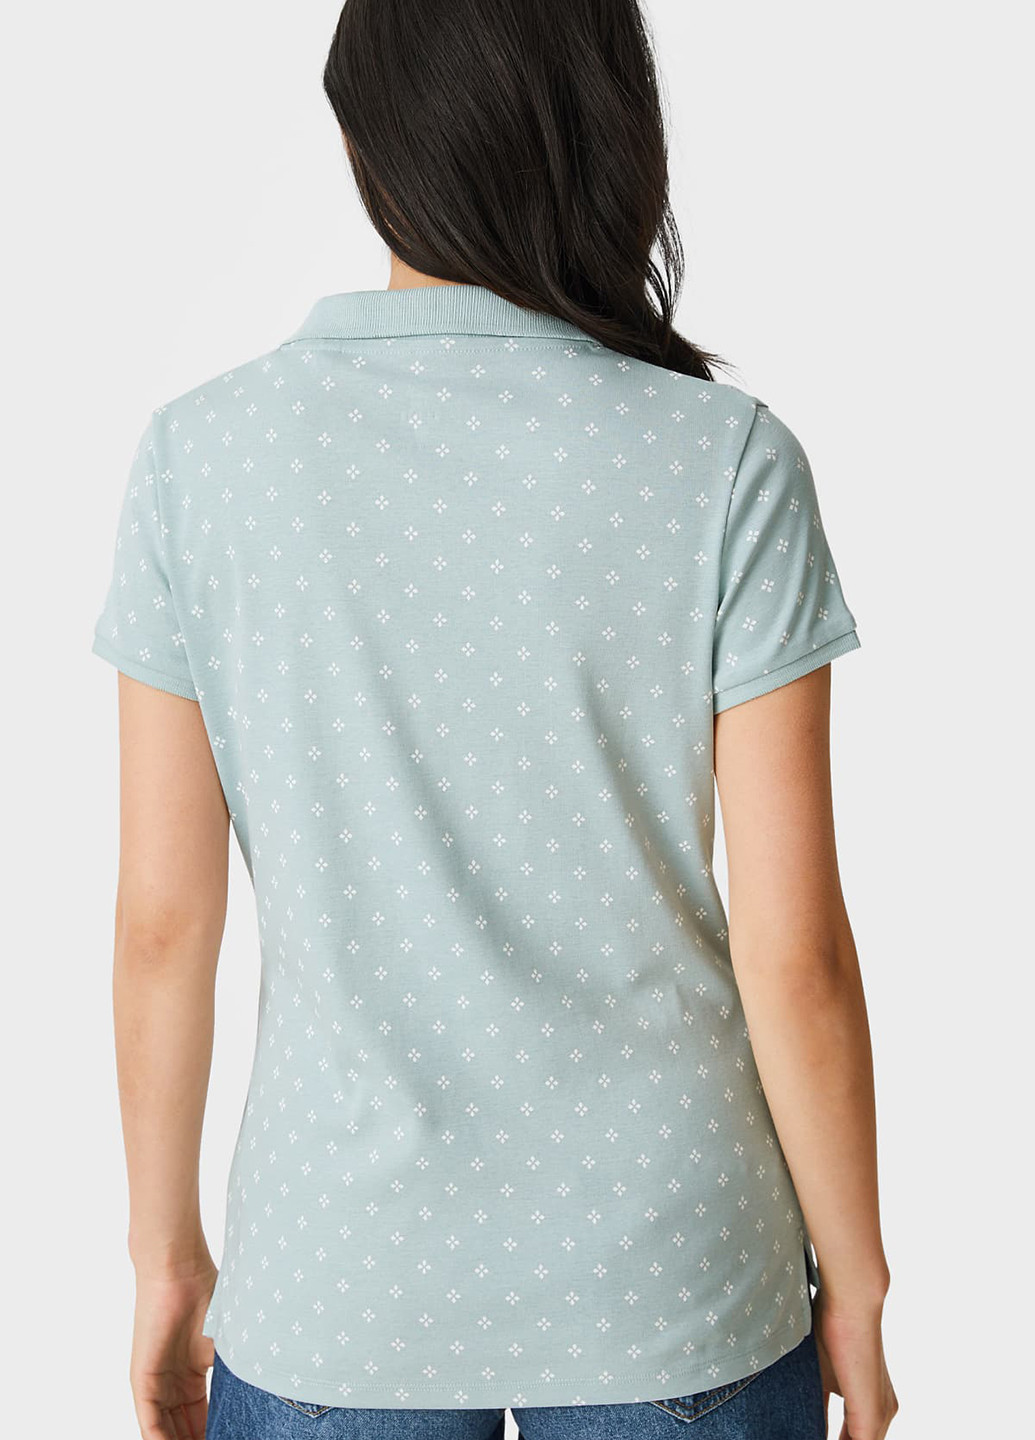 Мятная женская футболка-поло C&A с геометрическим узором